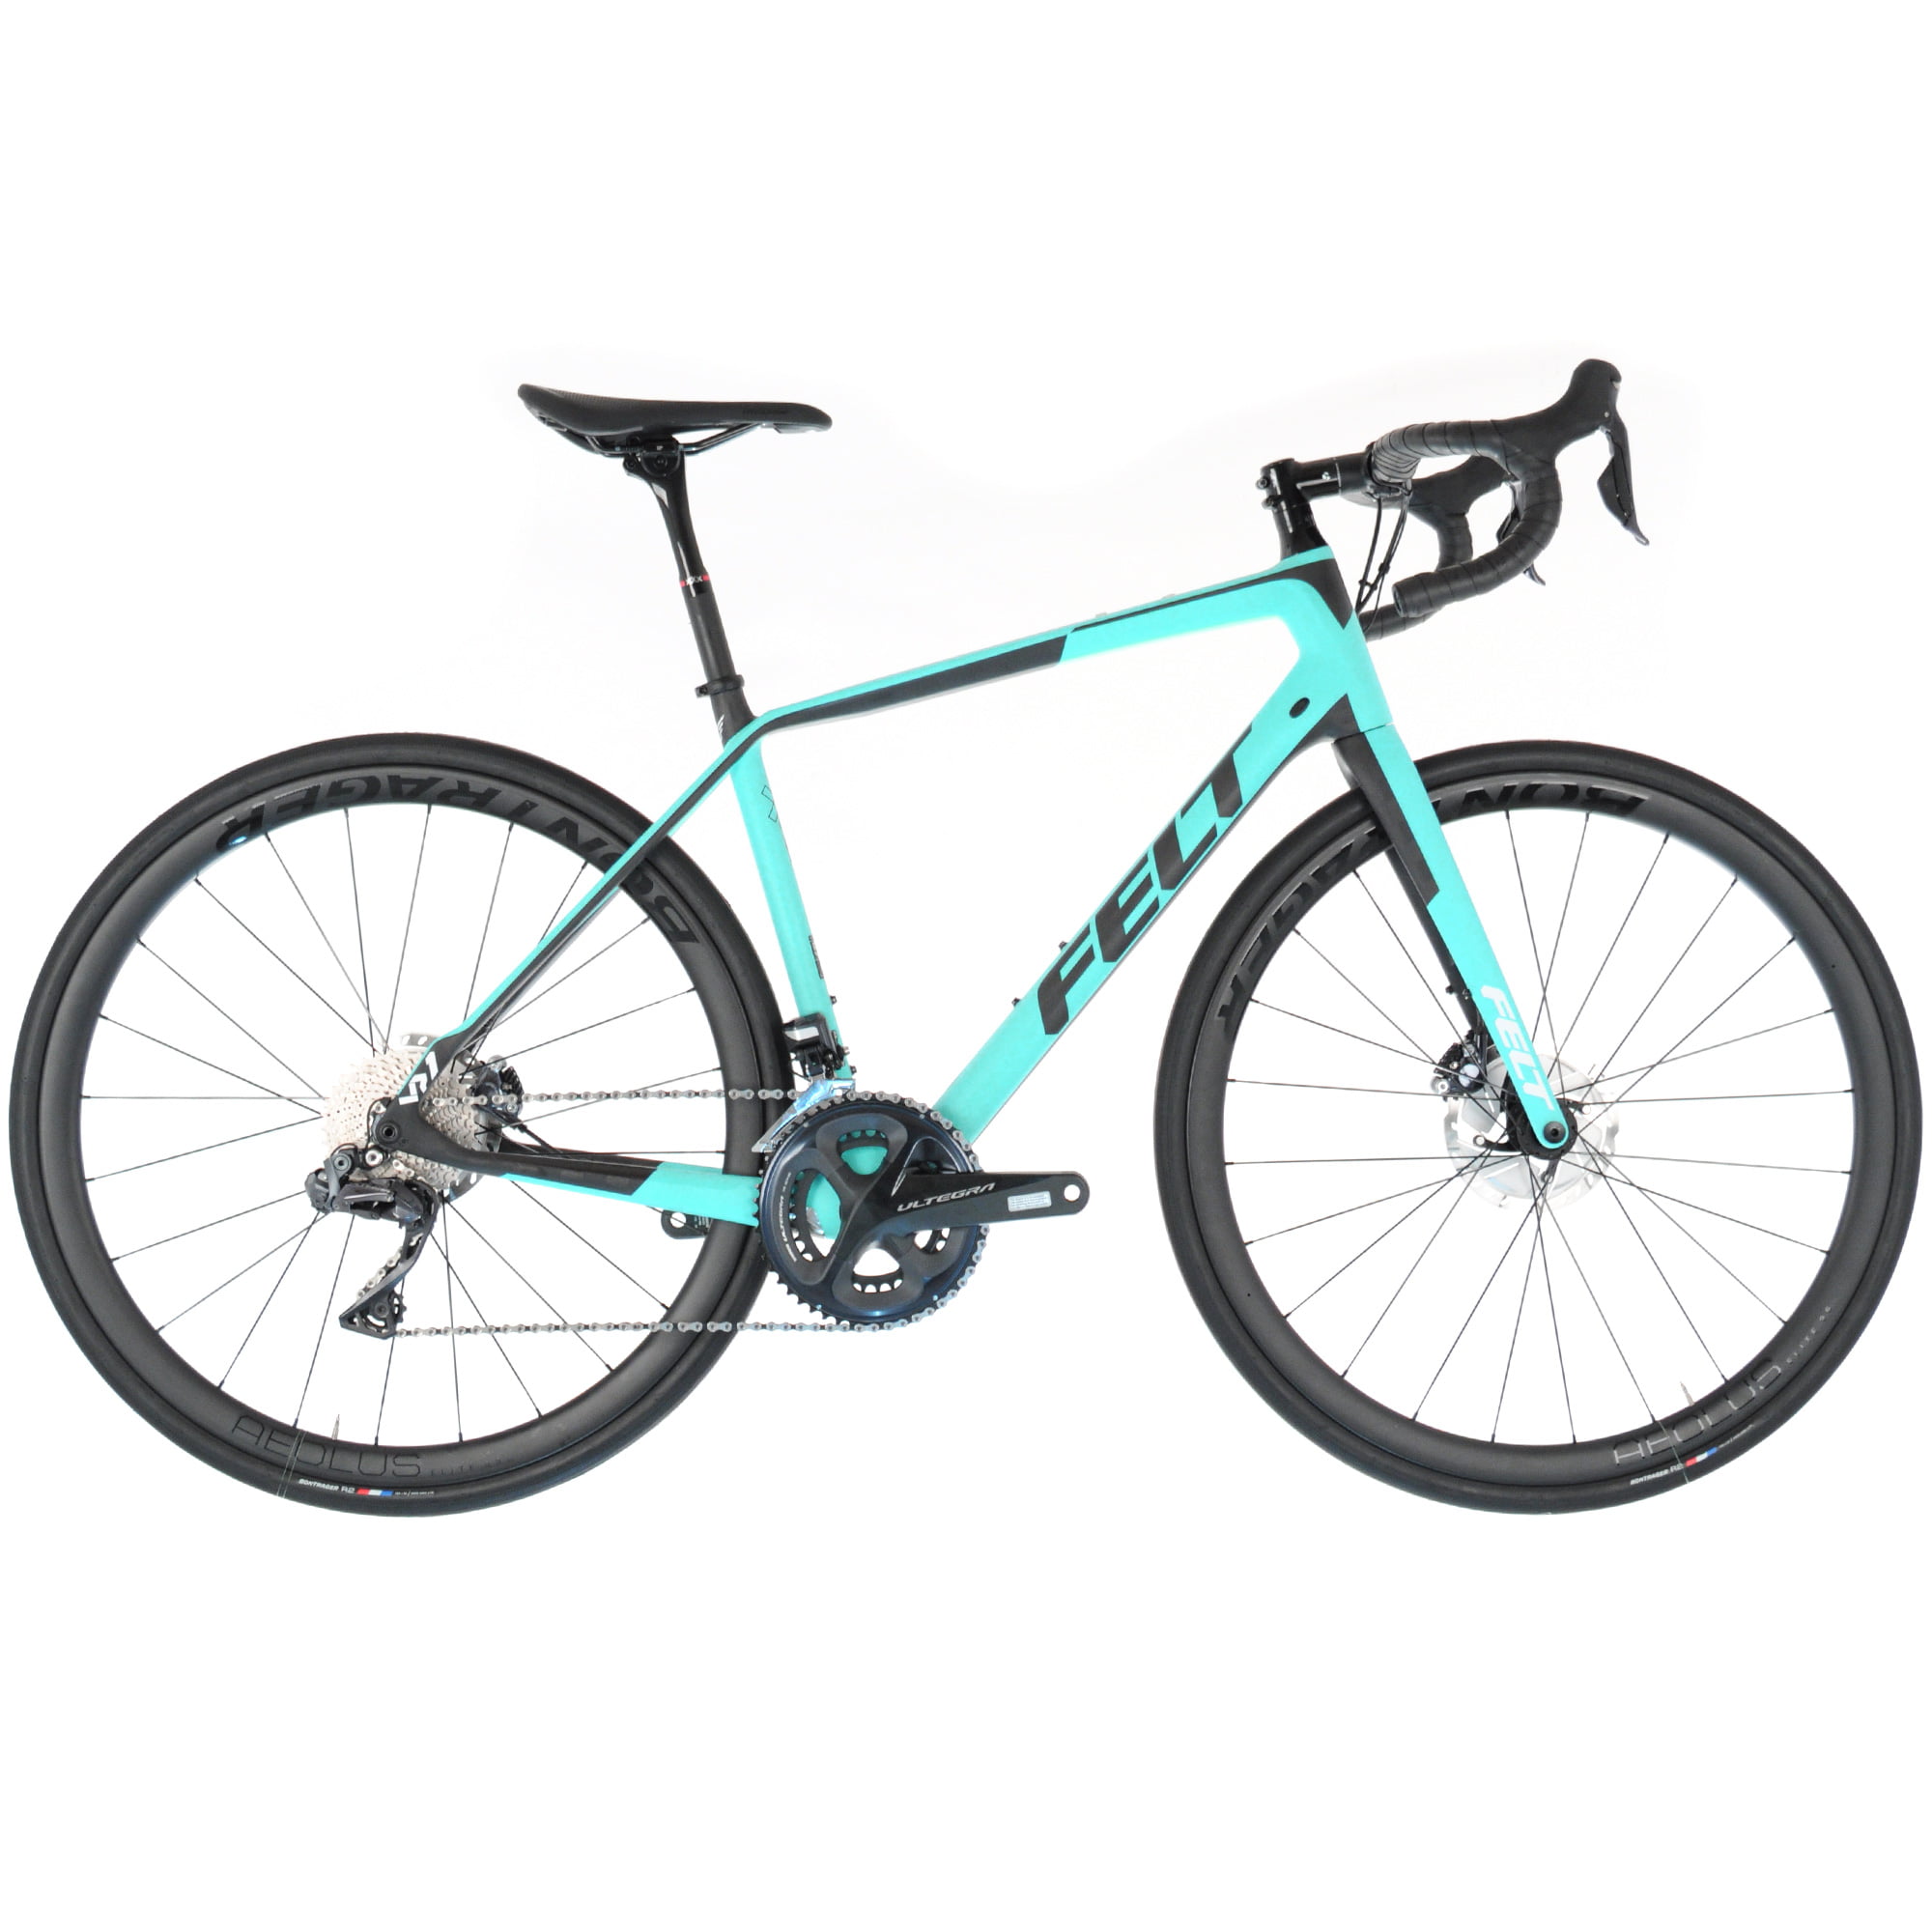 Felt VR1 Carbon Endurance Bike//Shimano Ultegra Di2 // 54cm/Aqua/Black - Walmart.com